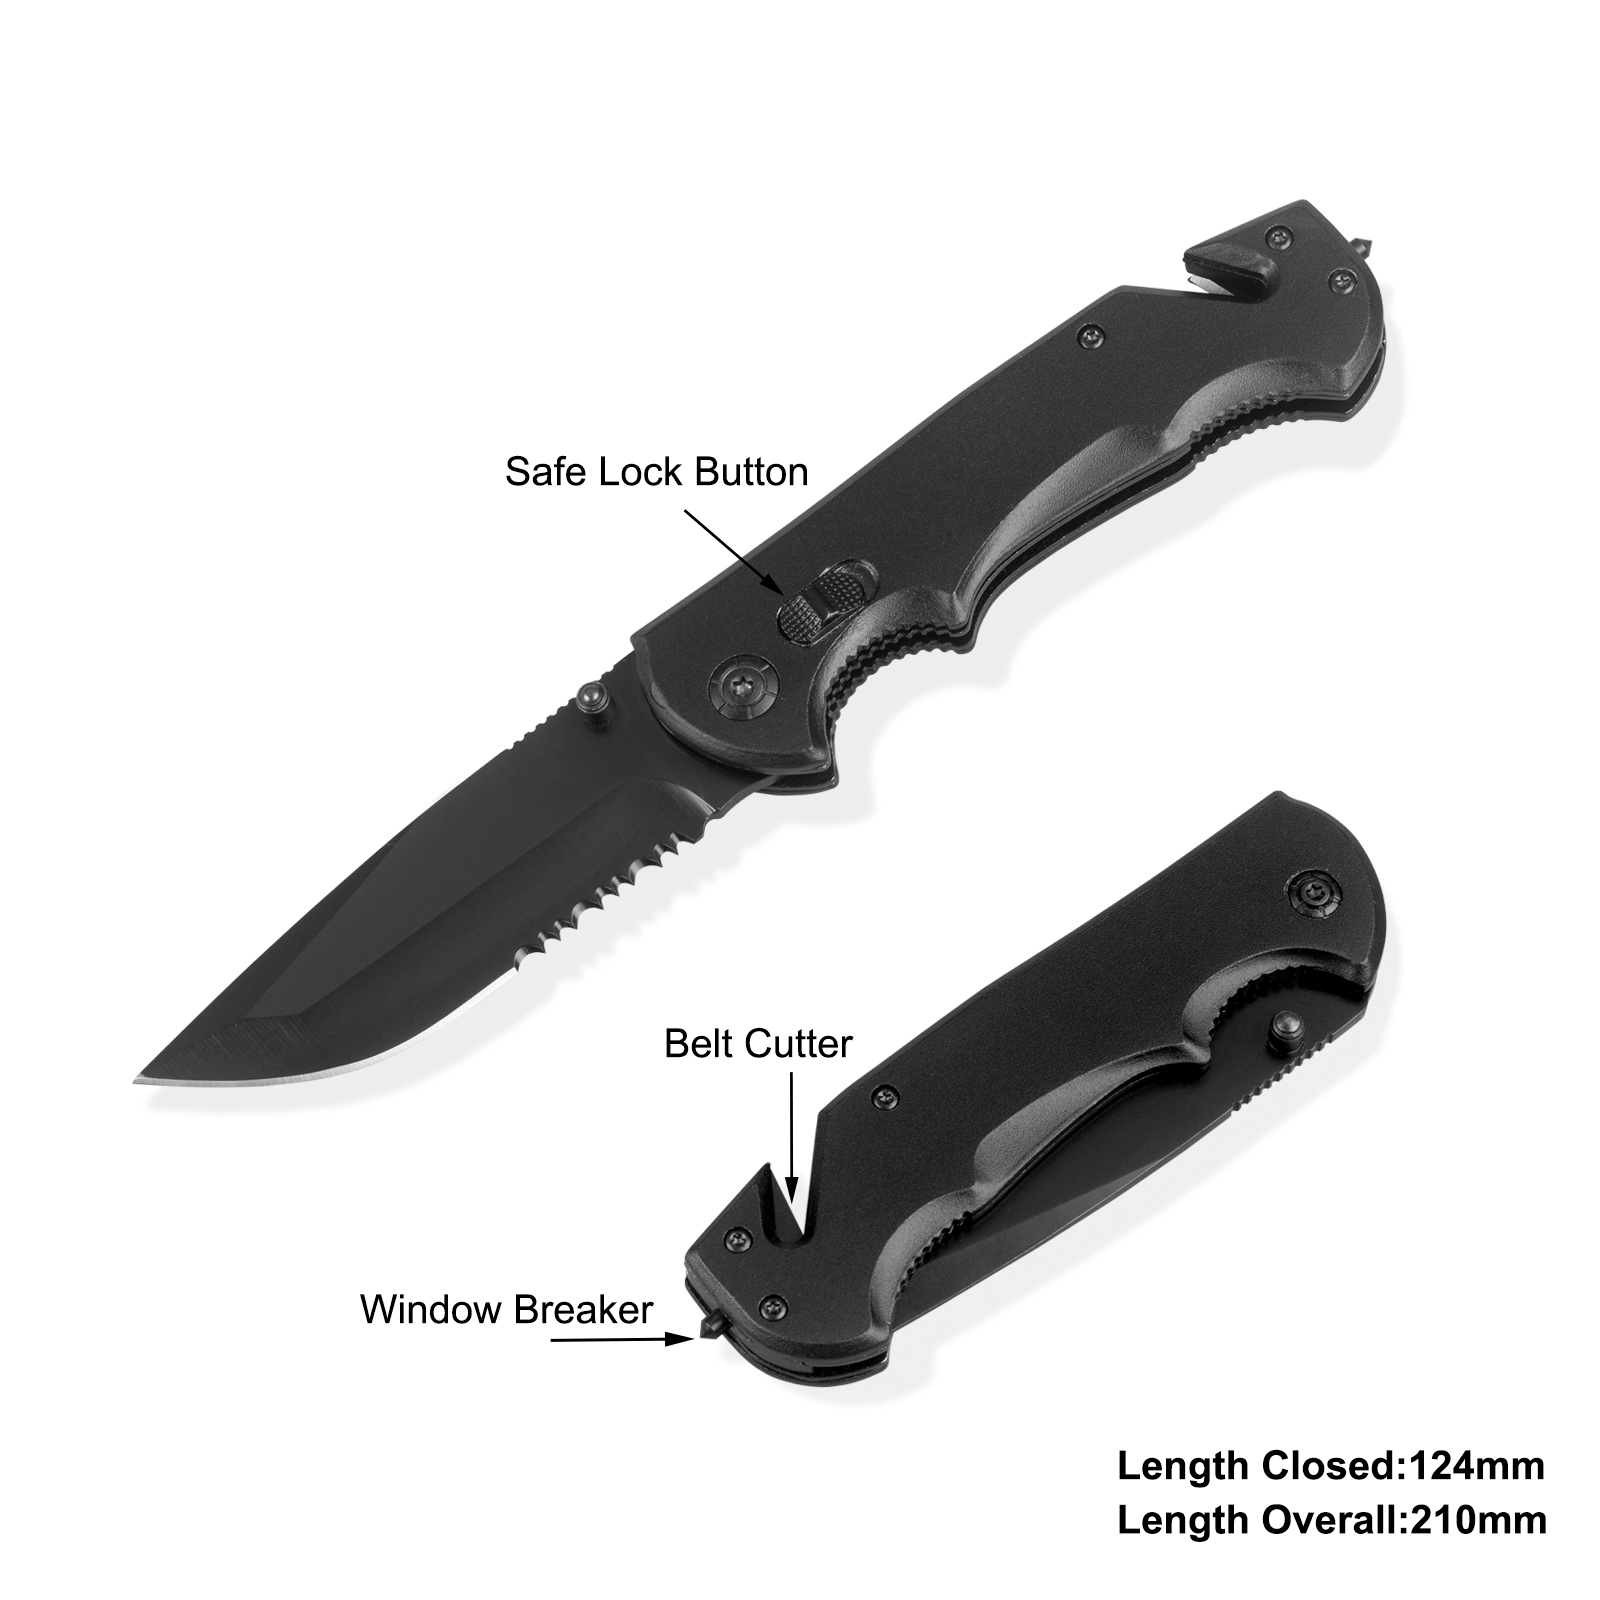 #31140 Survival Knife with Belt Cutter & Safe Lock